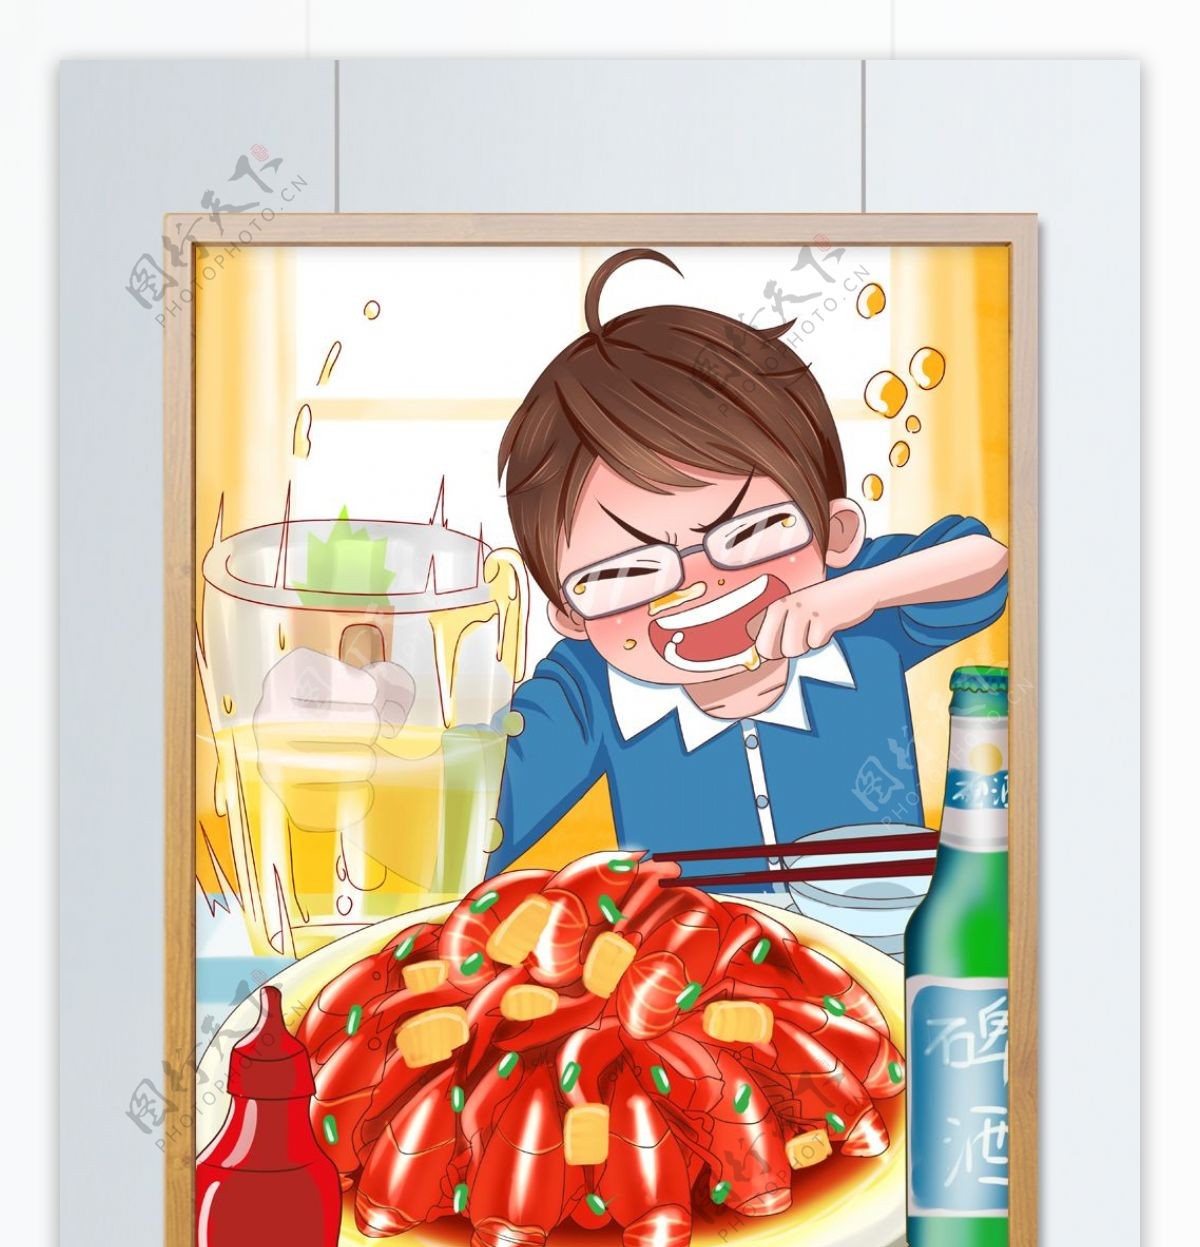 原创手绘插画食物插画龙虾啤酒夏日狂欢